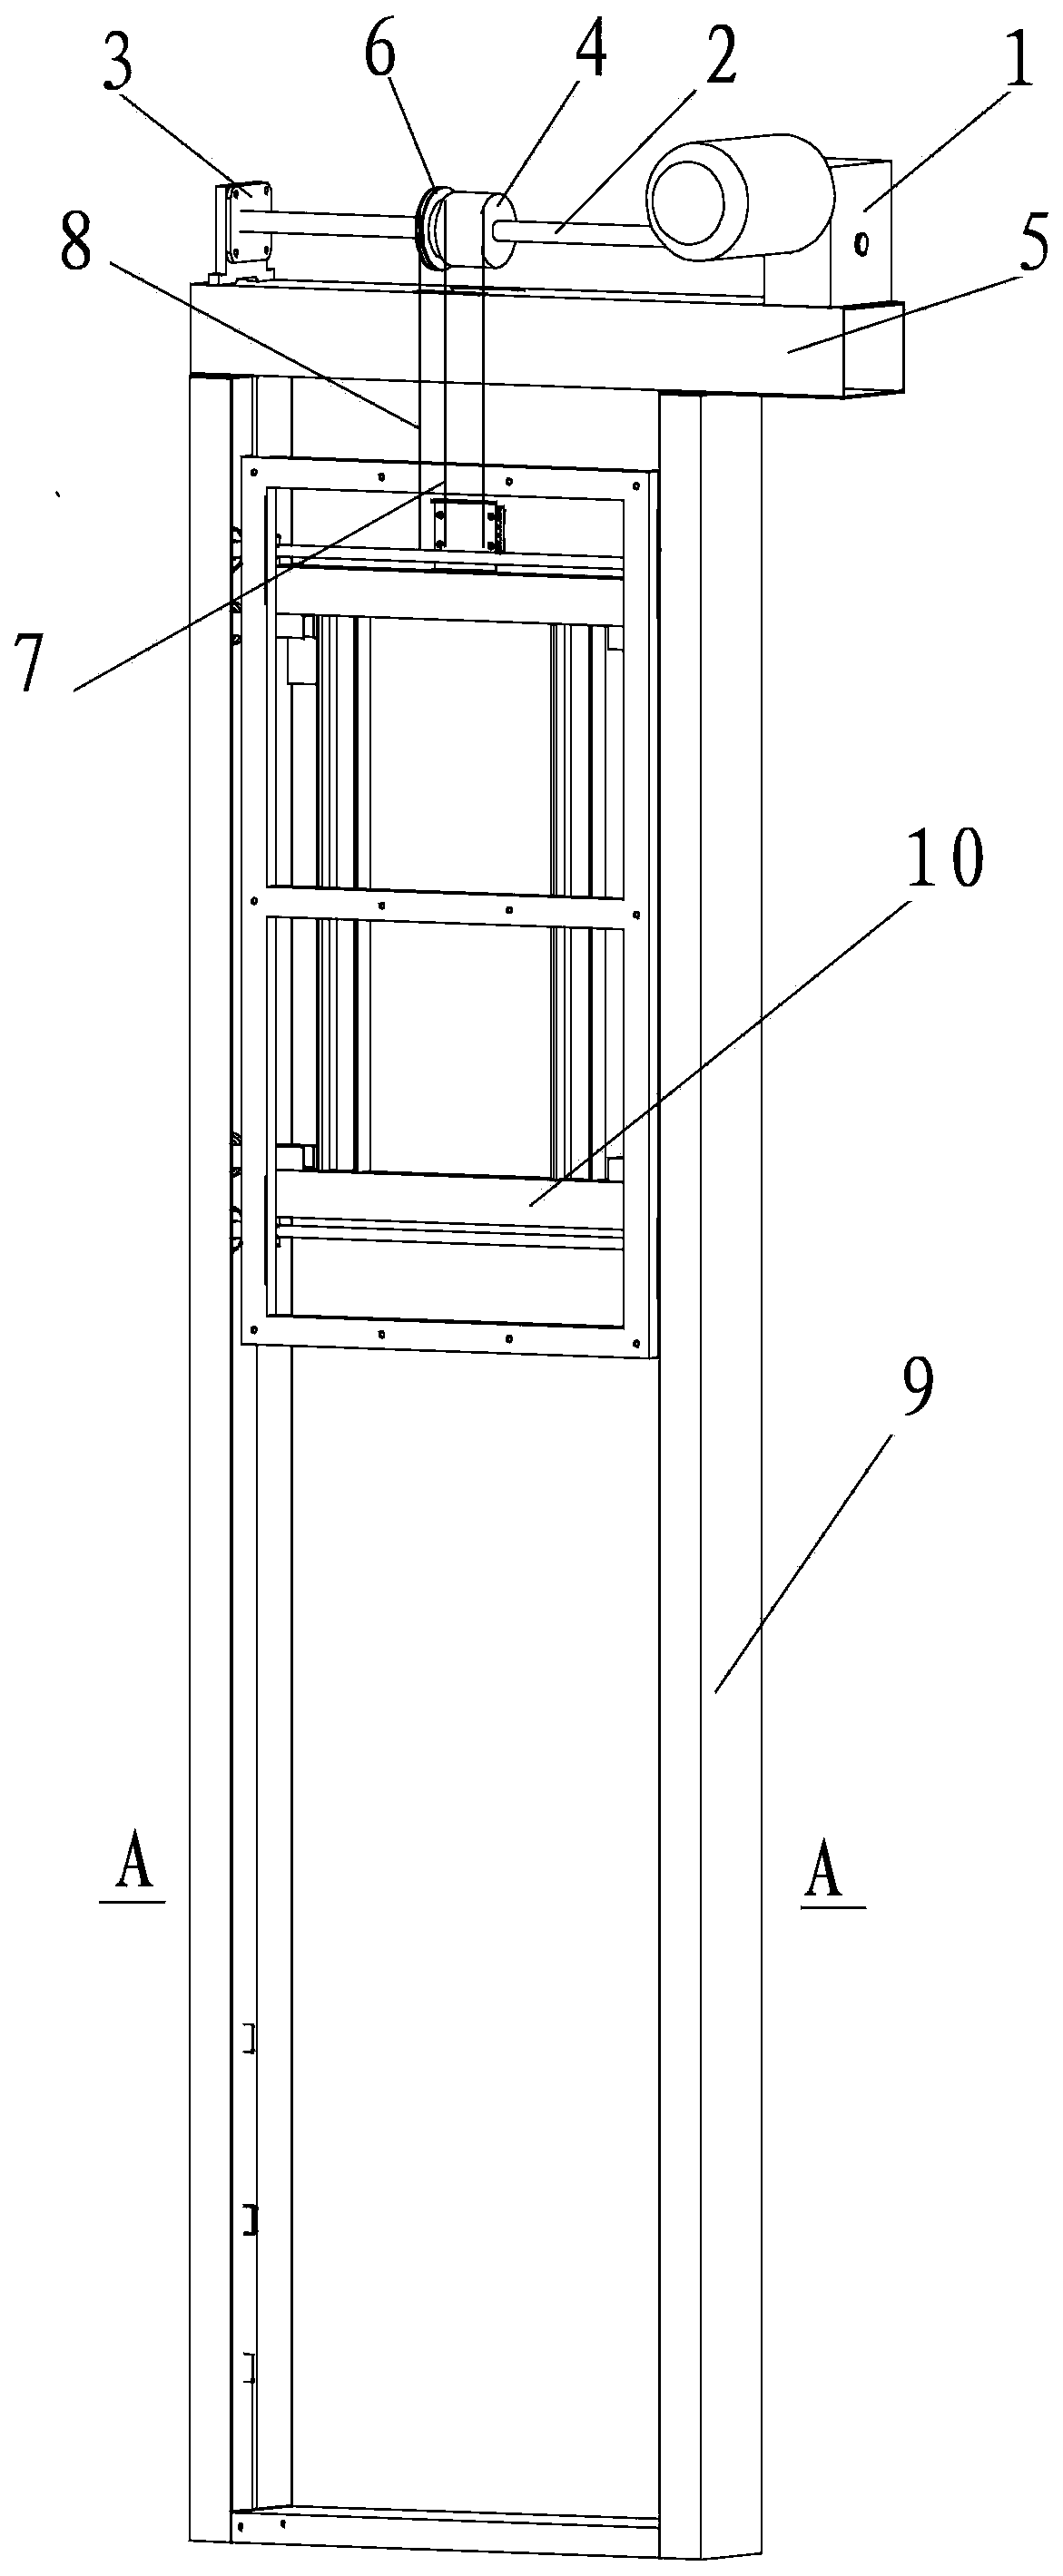 Wall-mounted type elevator